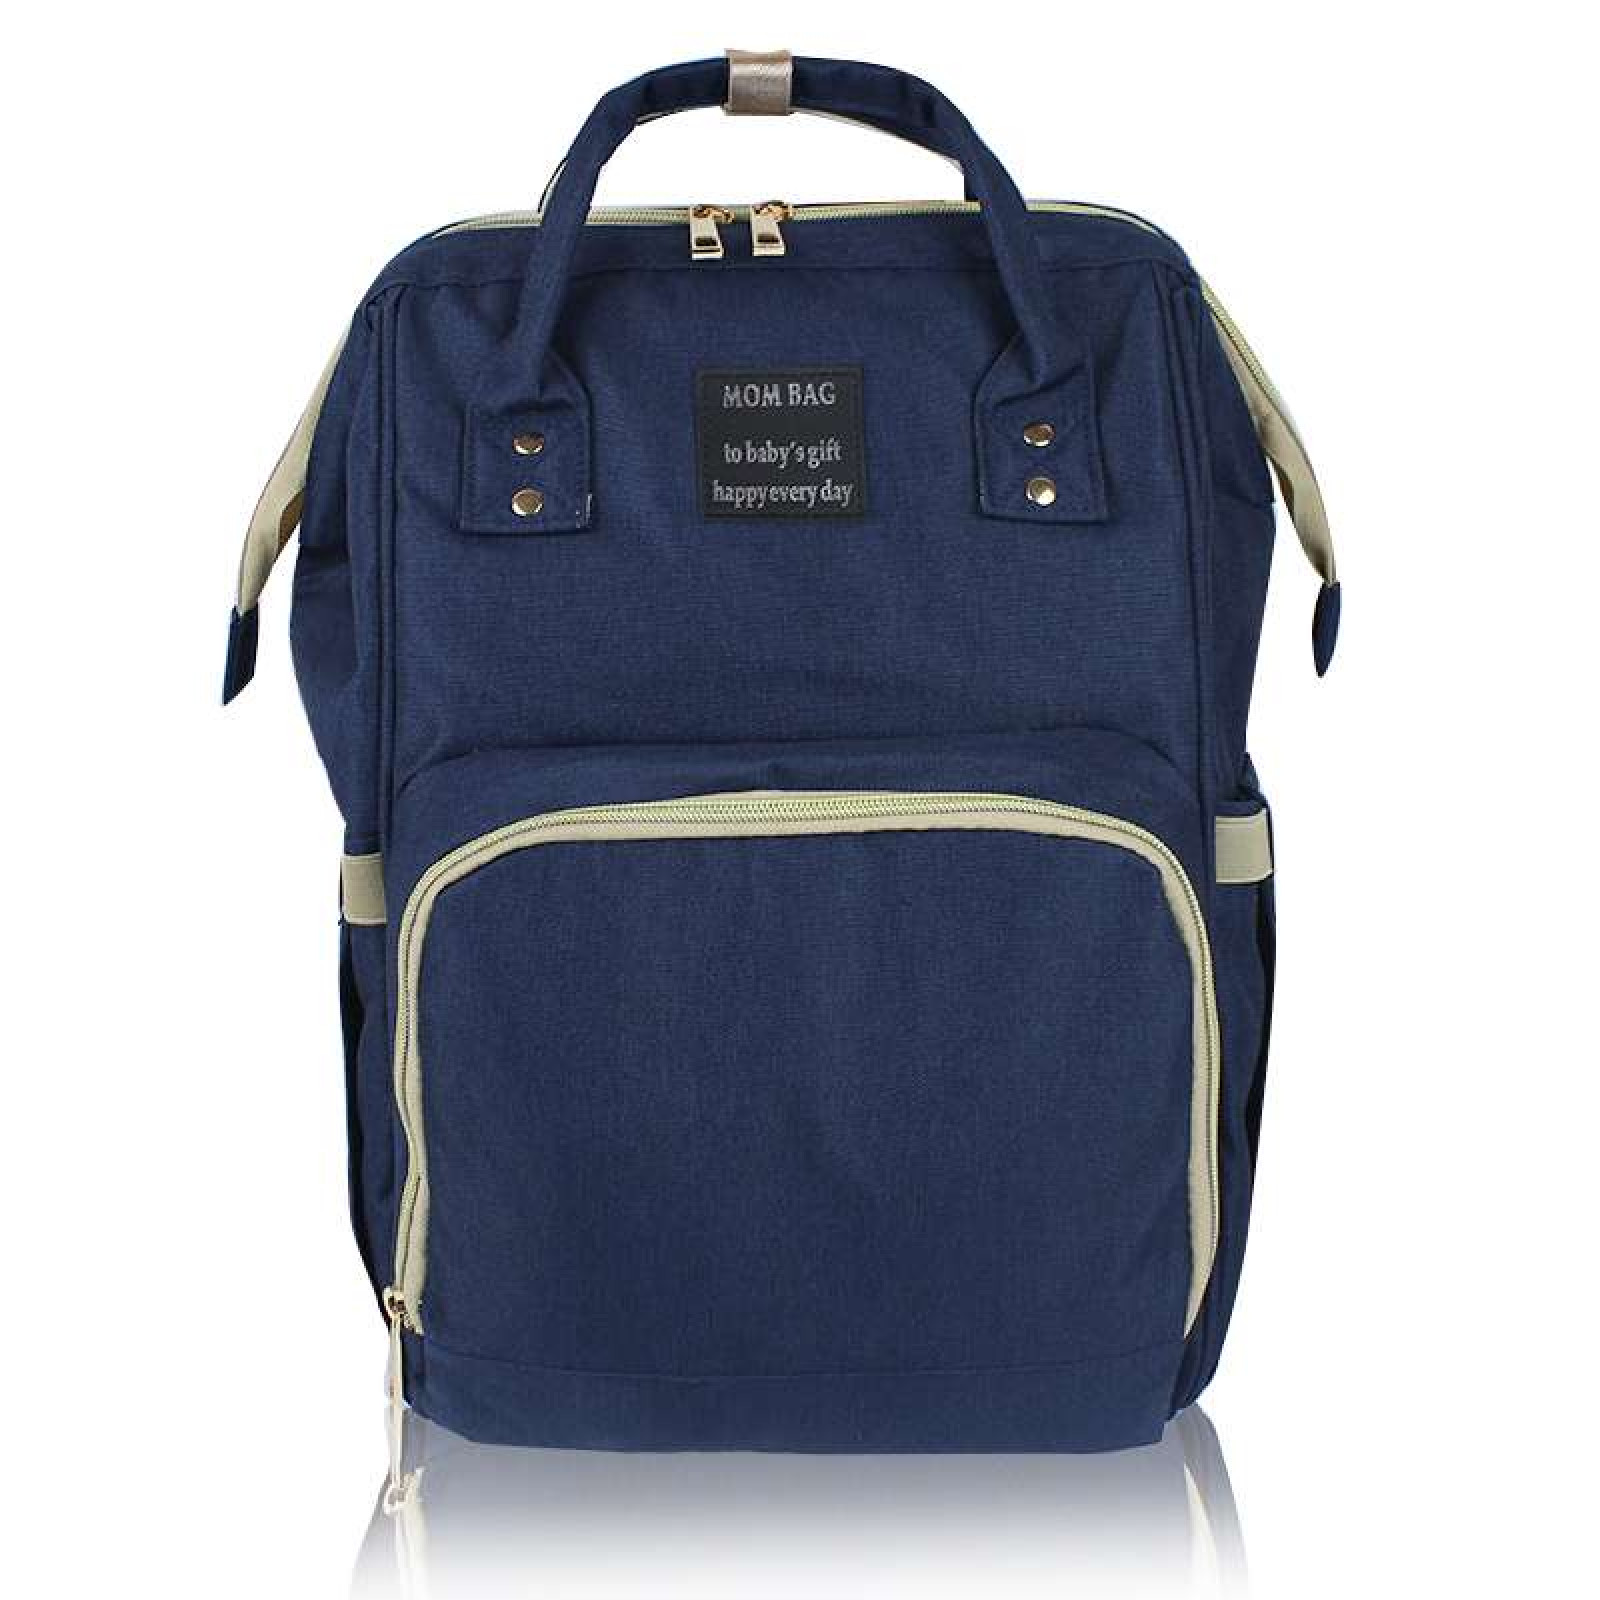 Сумка-рюкзак мультифункциональный органайзер для мамы Mummy Bag темно-синий 141176